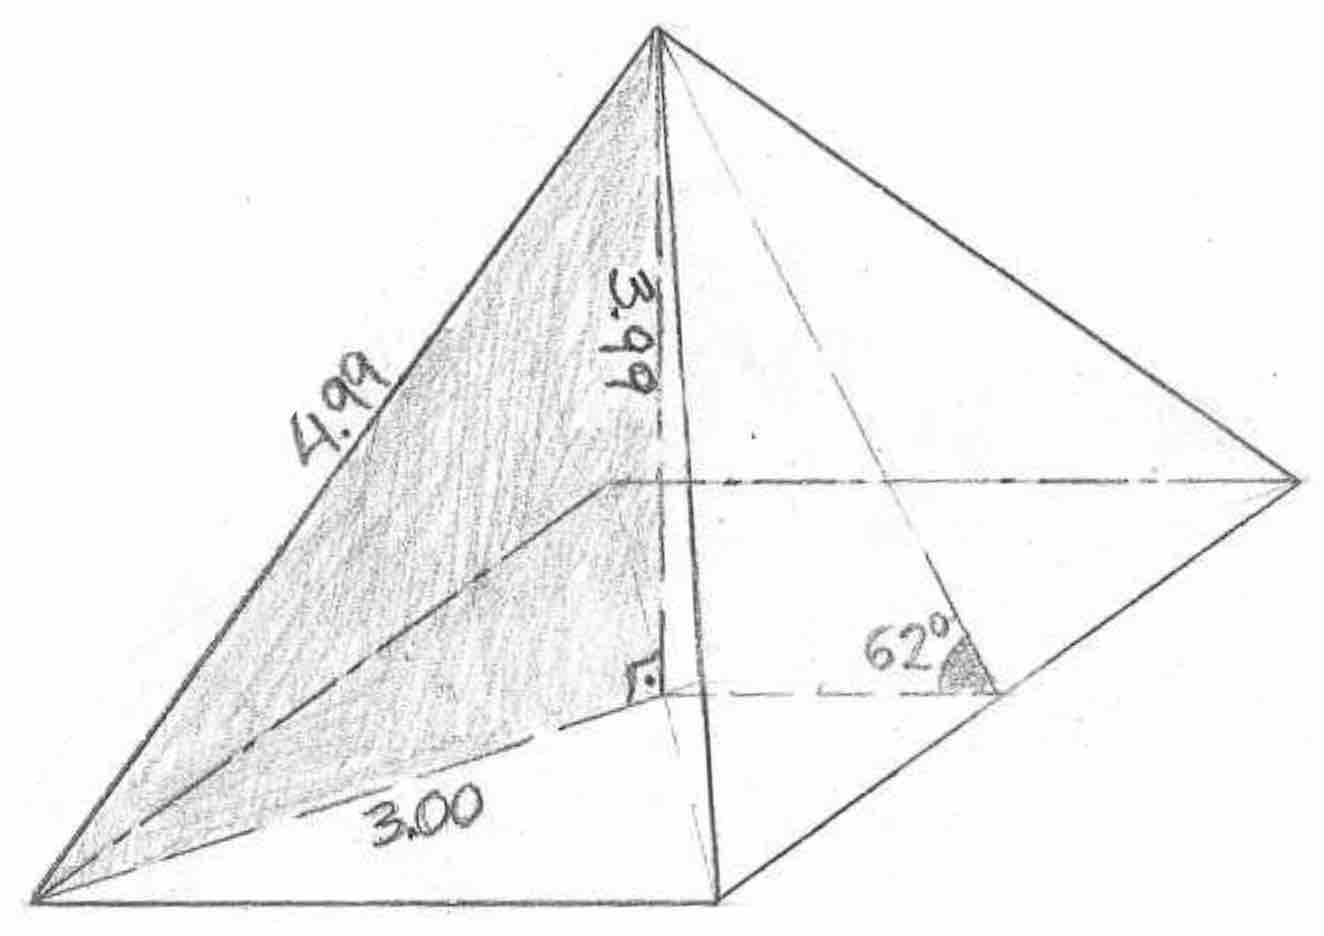 triángulo pitagórico 3-4-5 en la pirámide de 62 grados